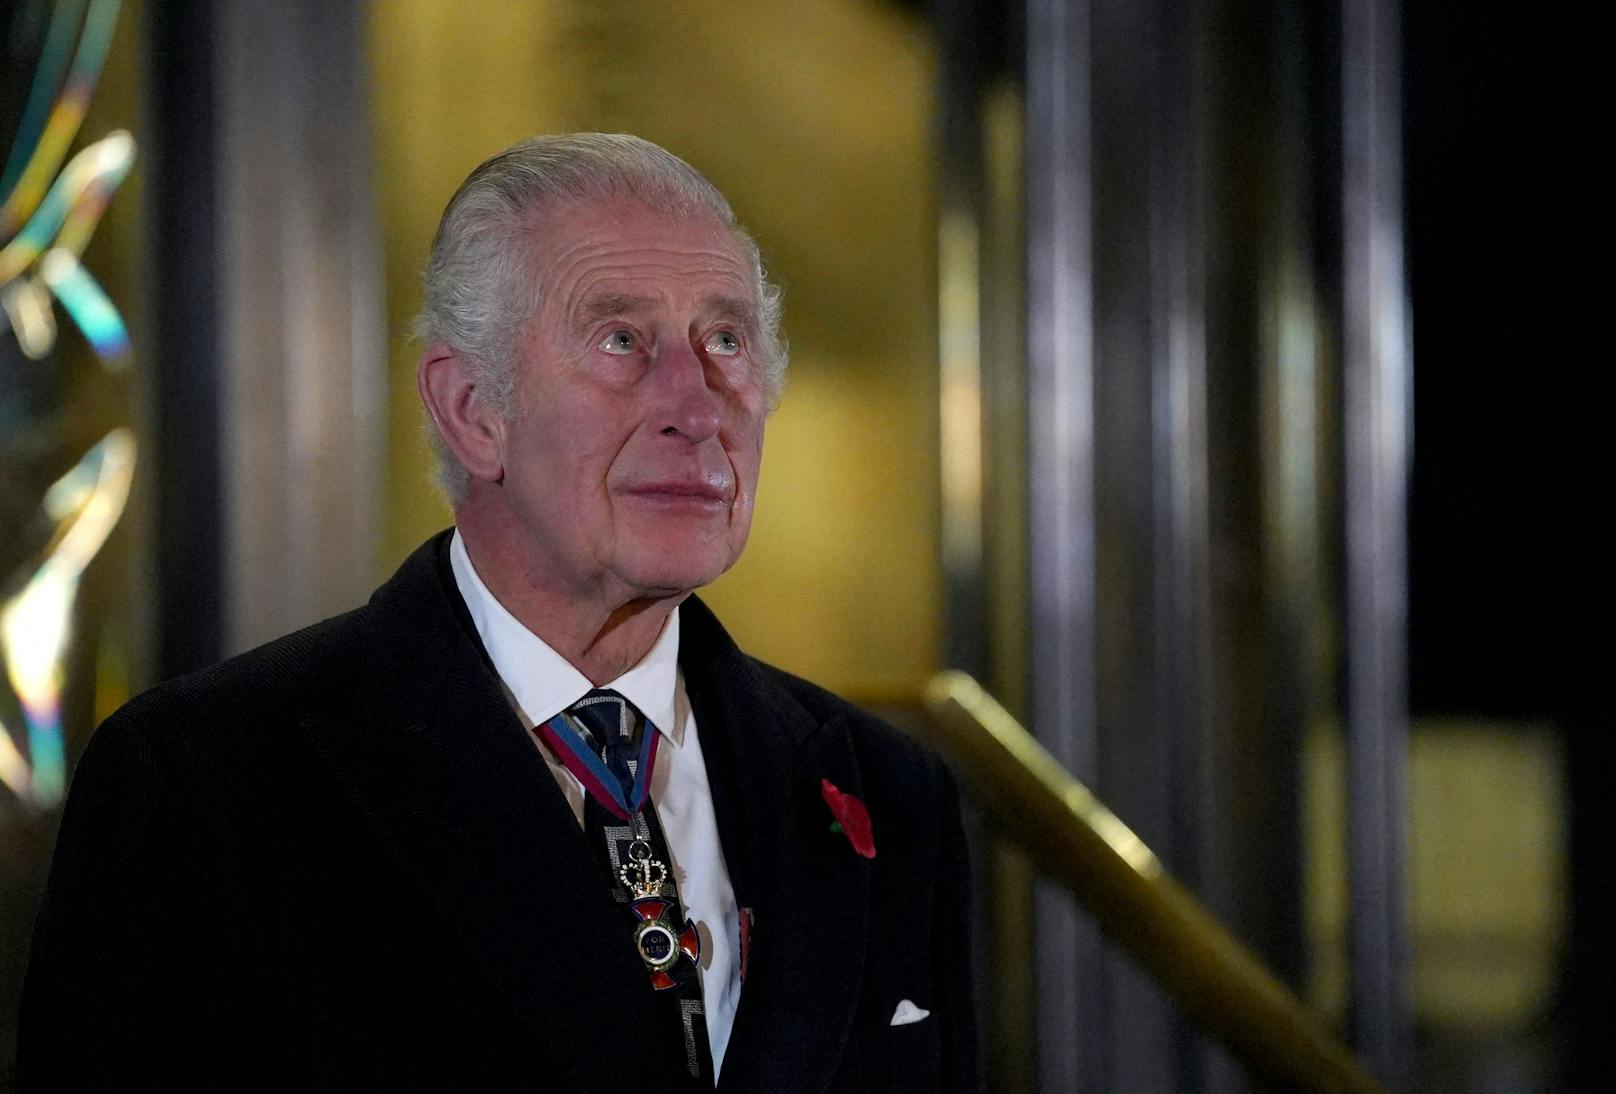 König Charles reagierte am "Royal British Legion Festival of Remembrance" emotional, nachdem er Statuen seiner Eltern Königin Elizabeth II und Prinz Phillip bei der Royal Albert Hall in London enthüllt hat.